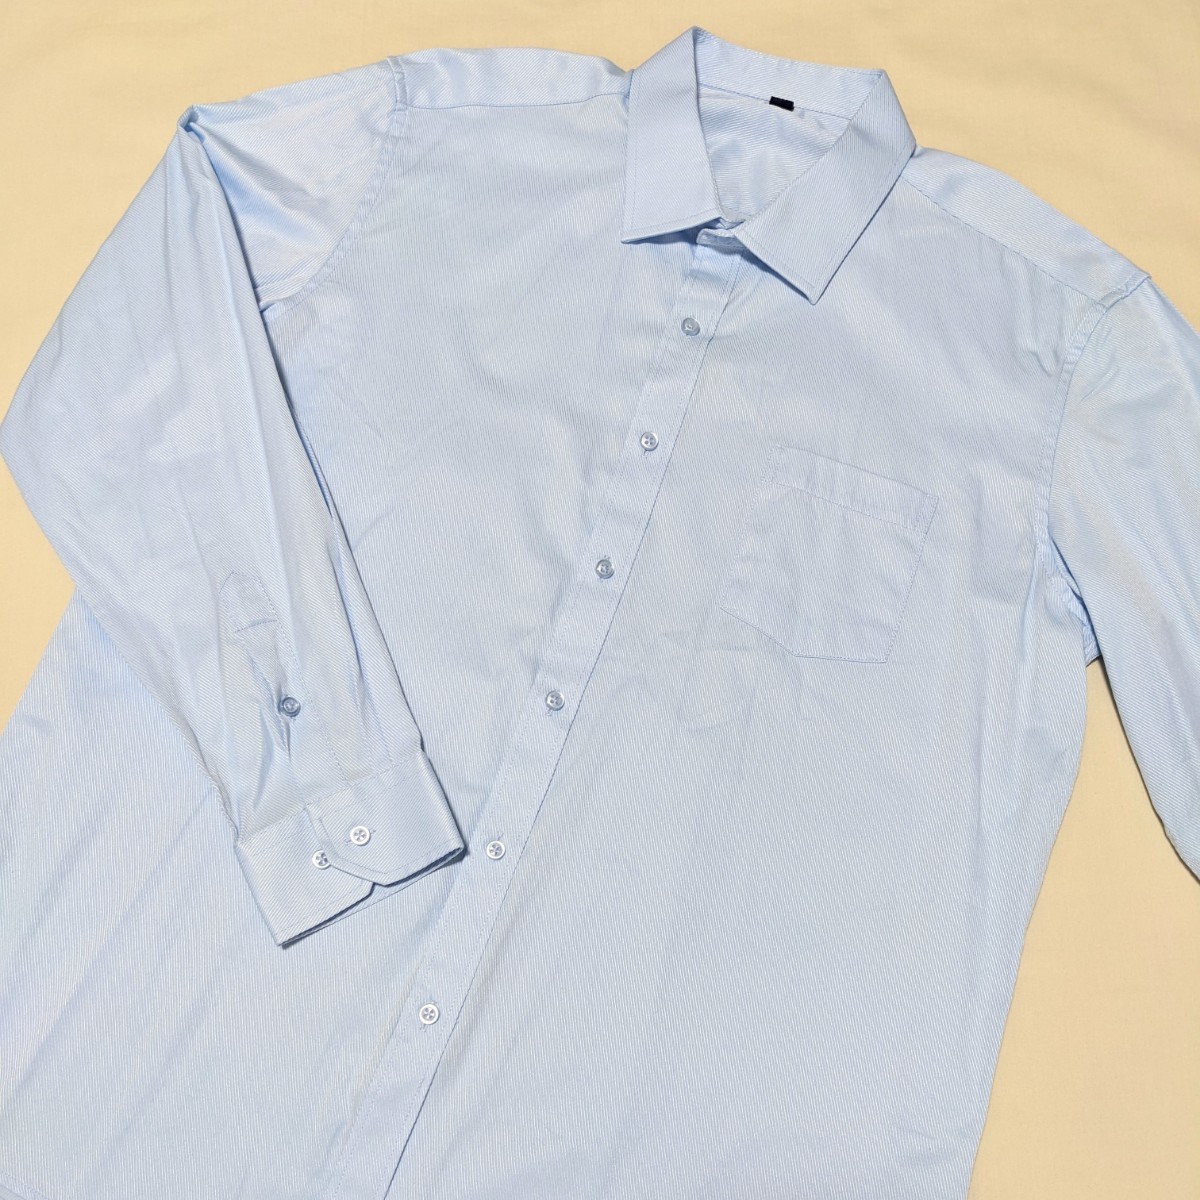 +FY37 メンズ フォーマル 44 3L 長袖 ワイシャツ ドレスシャツ 6点 セット 白 ブルー ビジネス セレモニー 大きいサイズ_画像7